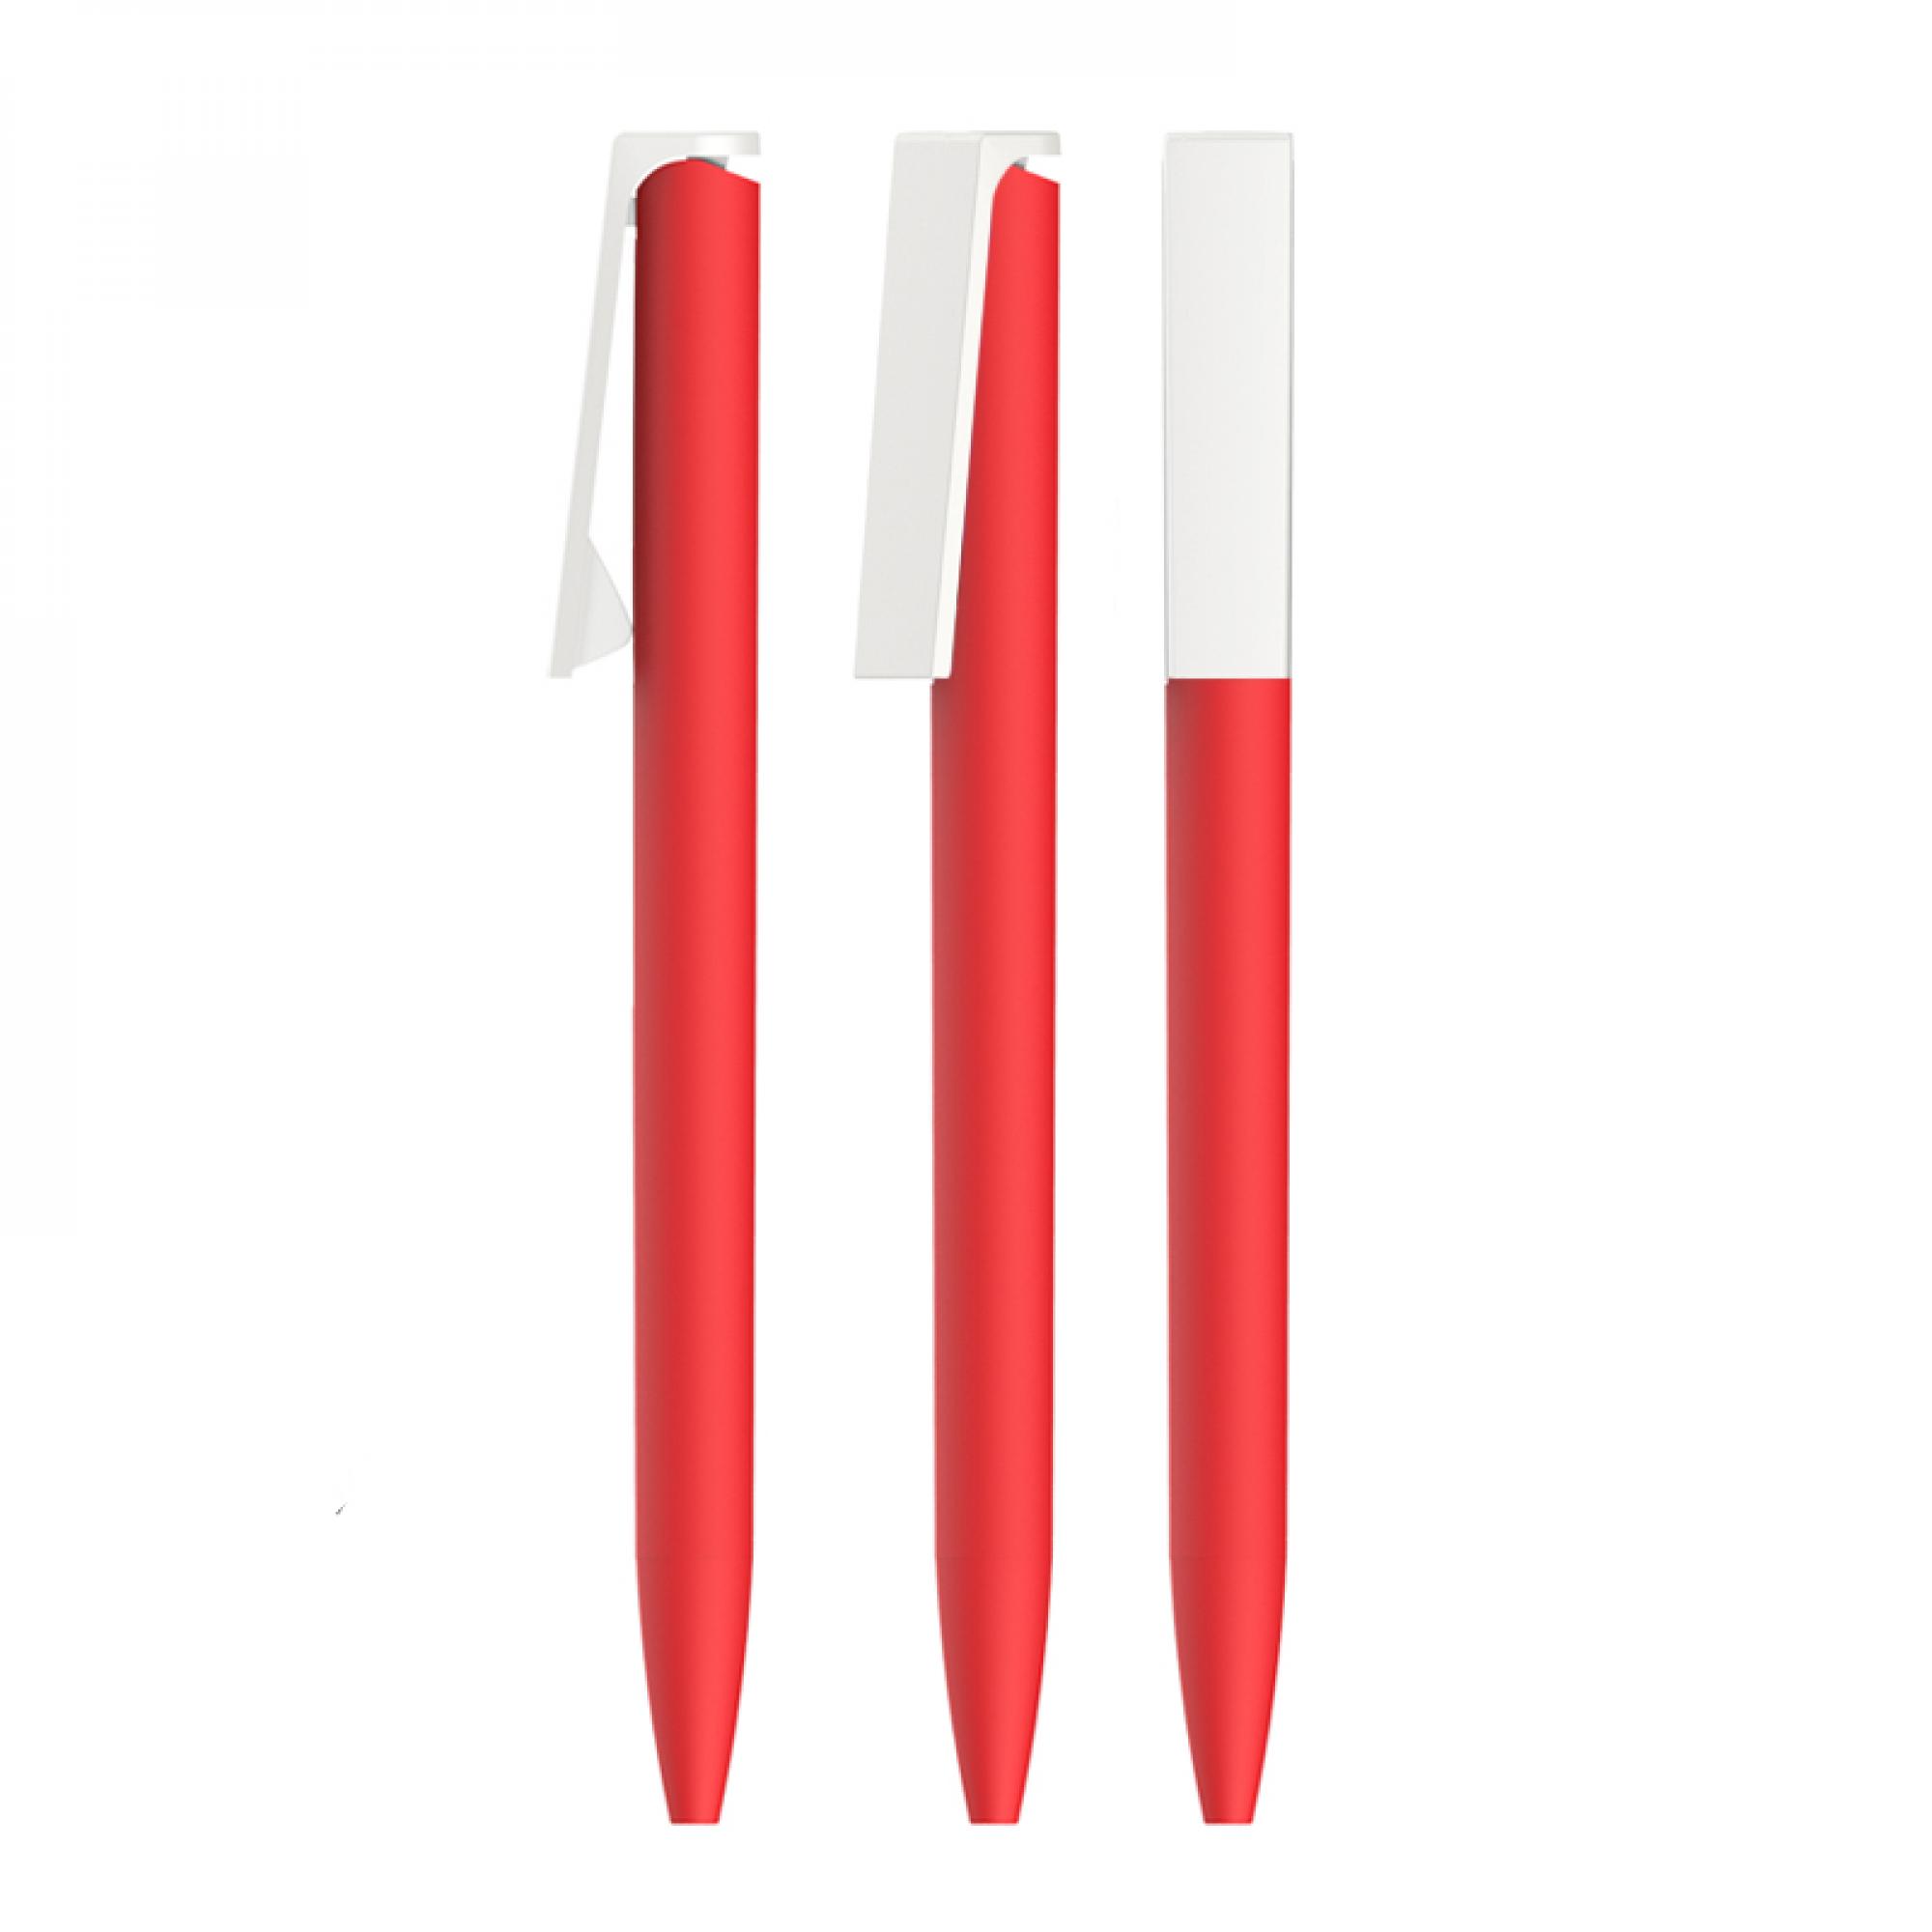 Ручка шариковая "Clive", покрытие soft touch, цвет красный с белым, фото 2